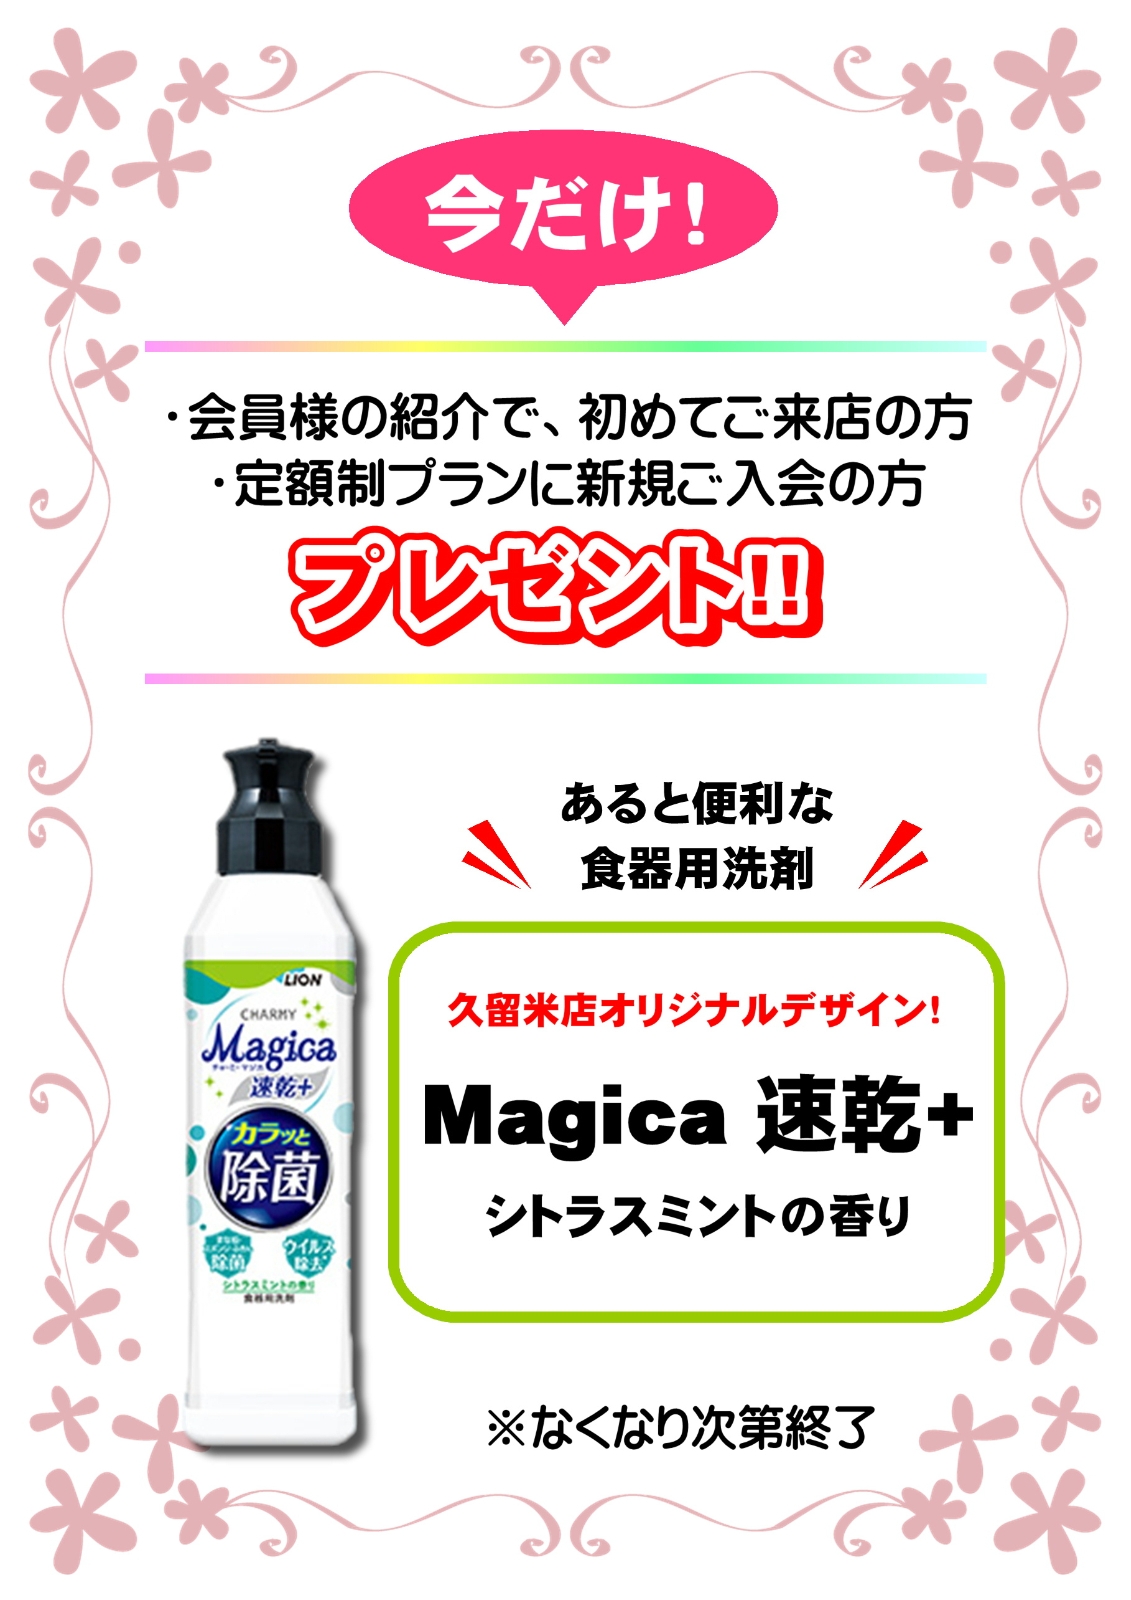 食器用洗剤『Magica』プレゼントキャンペーン☆